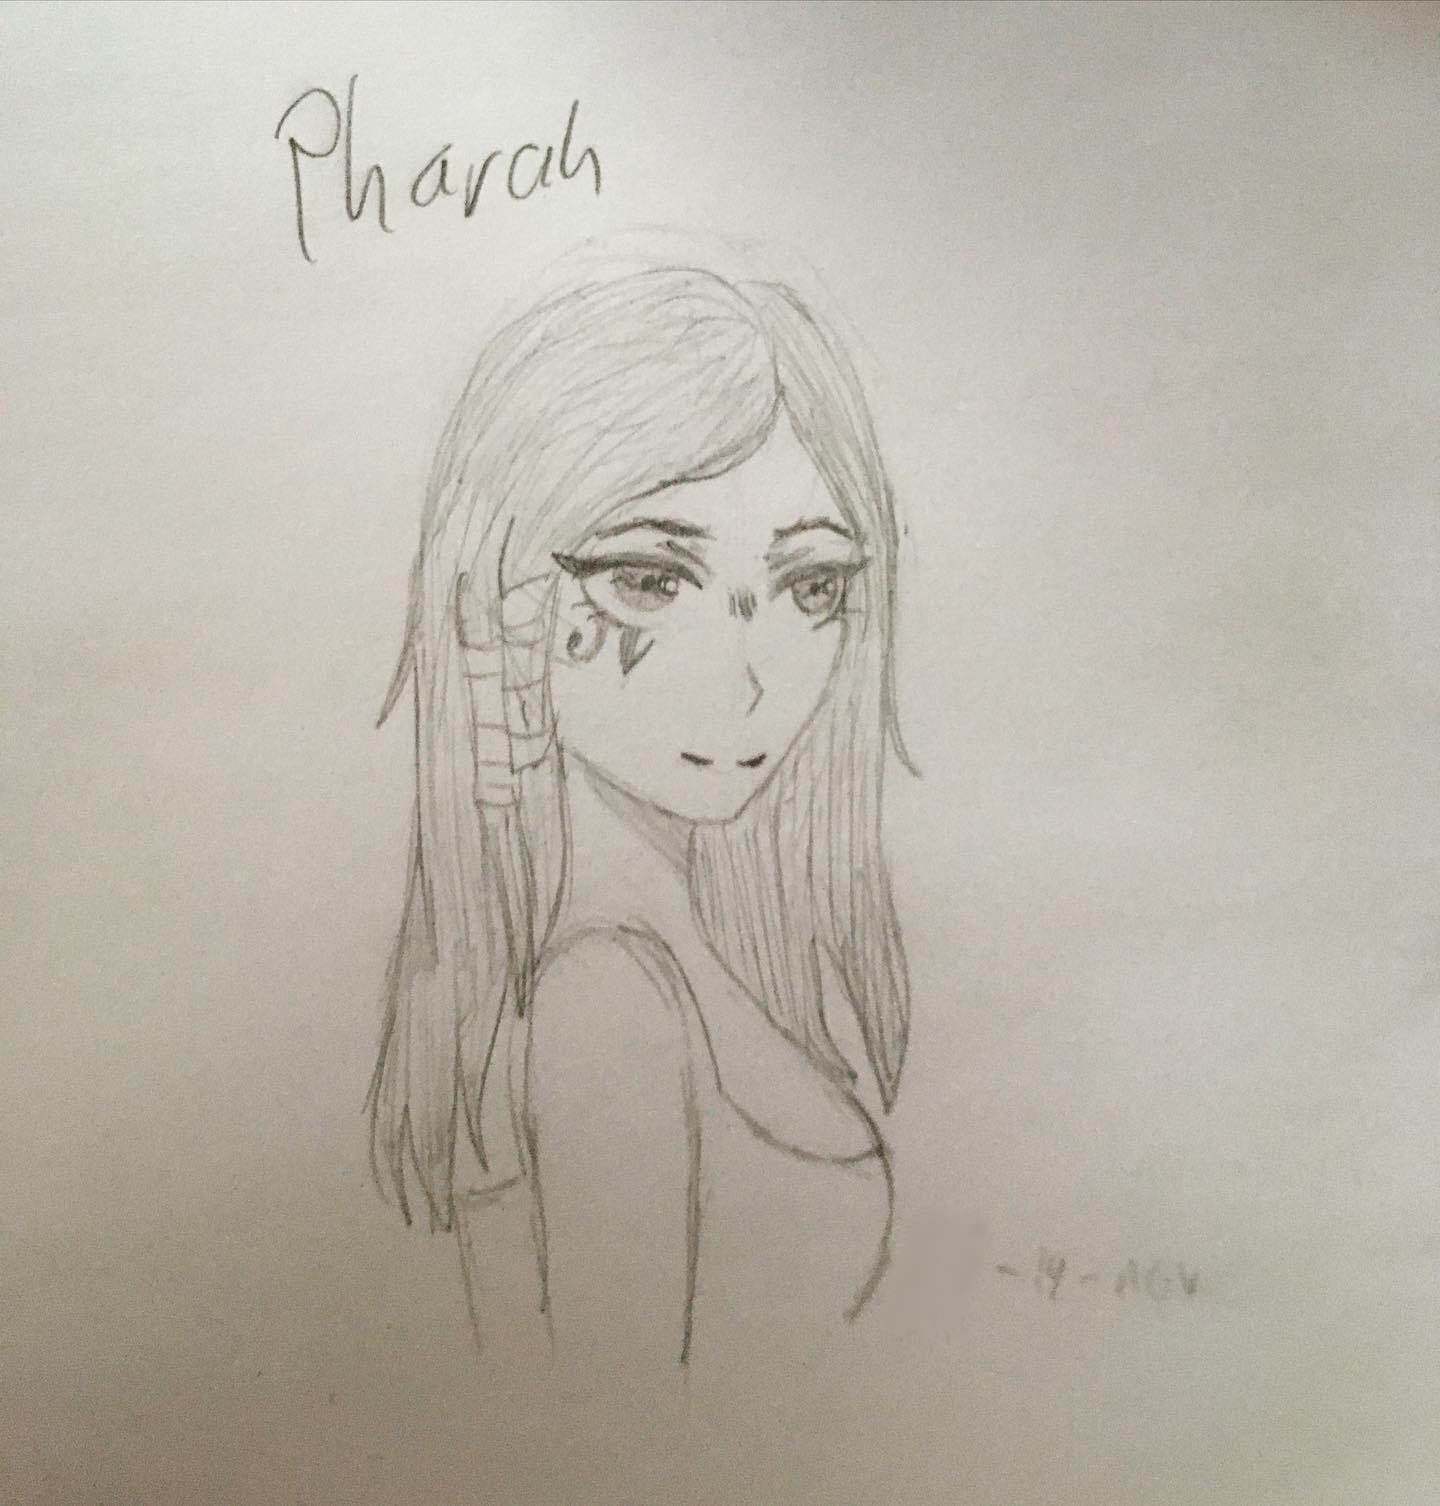 Pharah (2019)